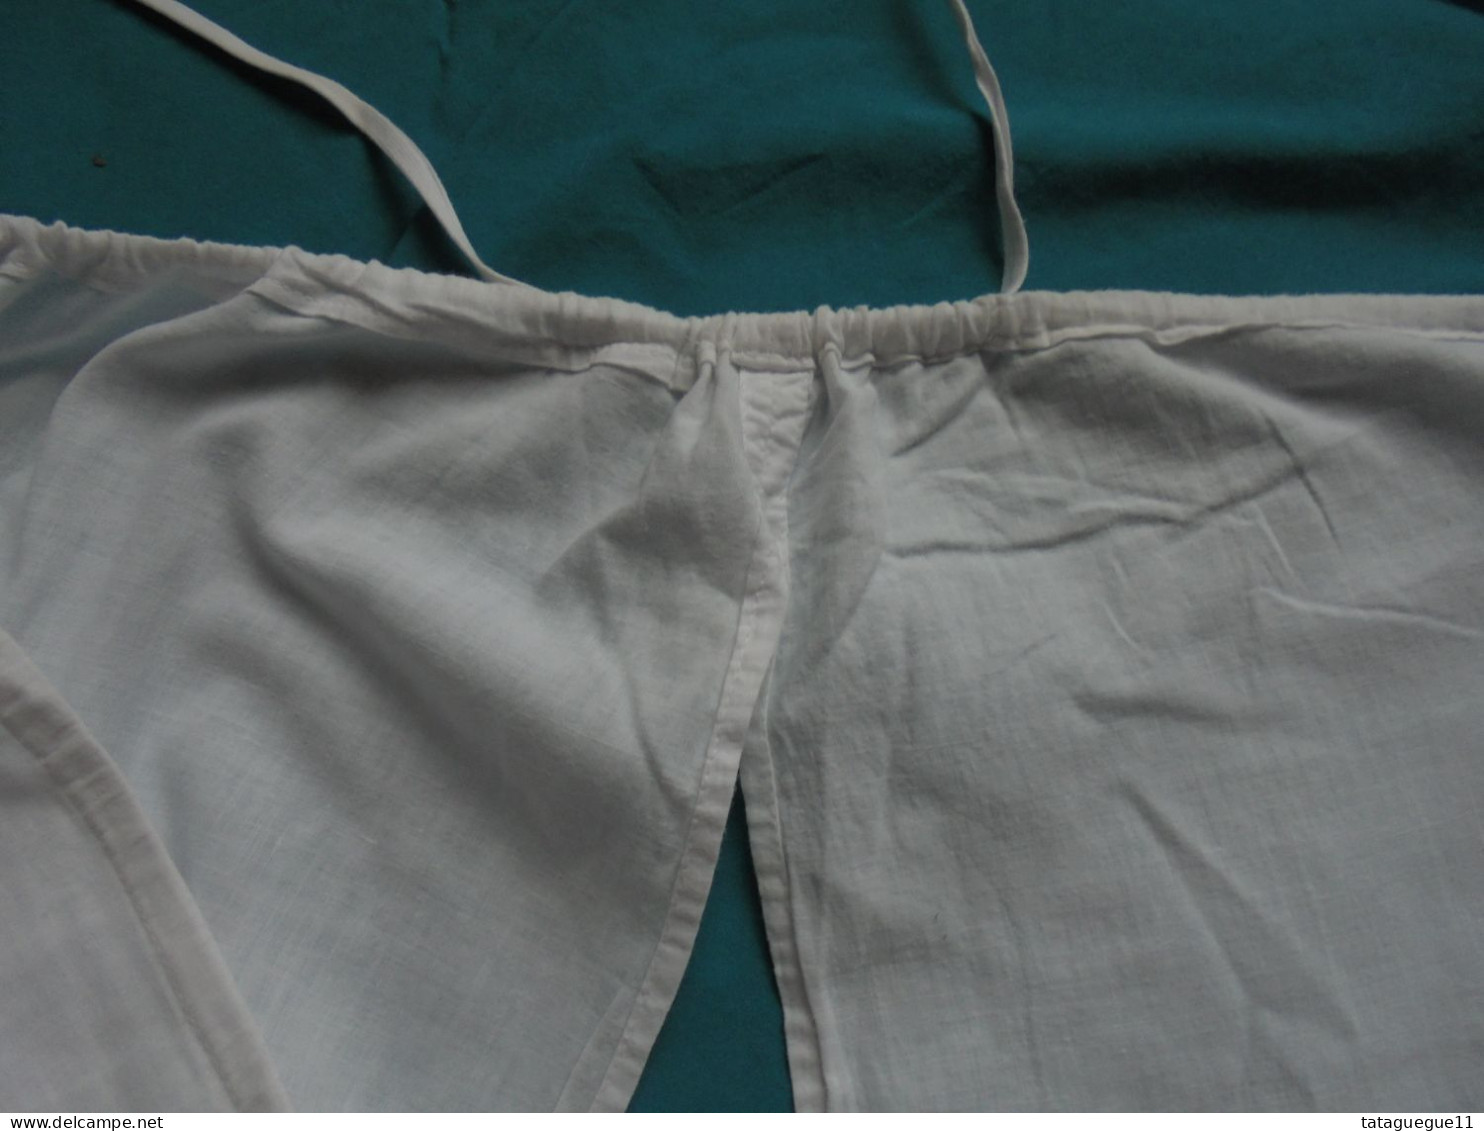 Ancien - Grande culotte fendue en coton blanc avec dentelle Années 20/30